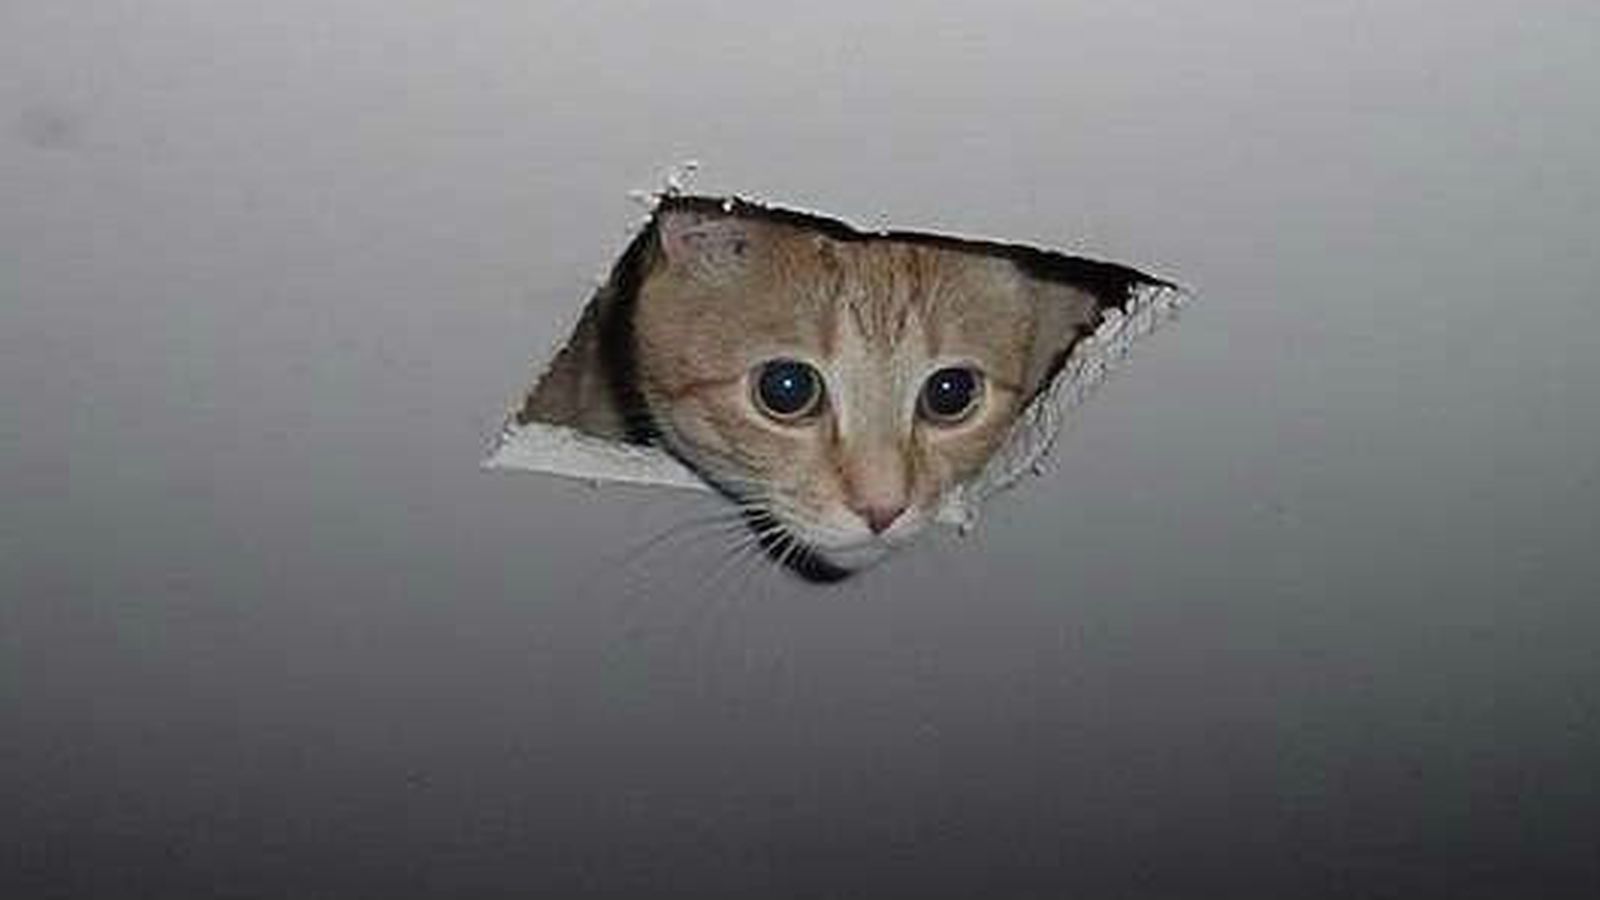 Foto: "Ceiling cat", uno de los memes más buscados en Google este año